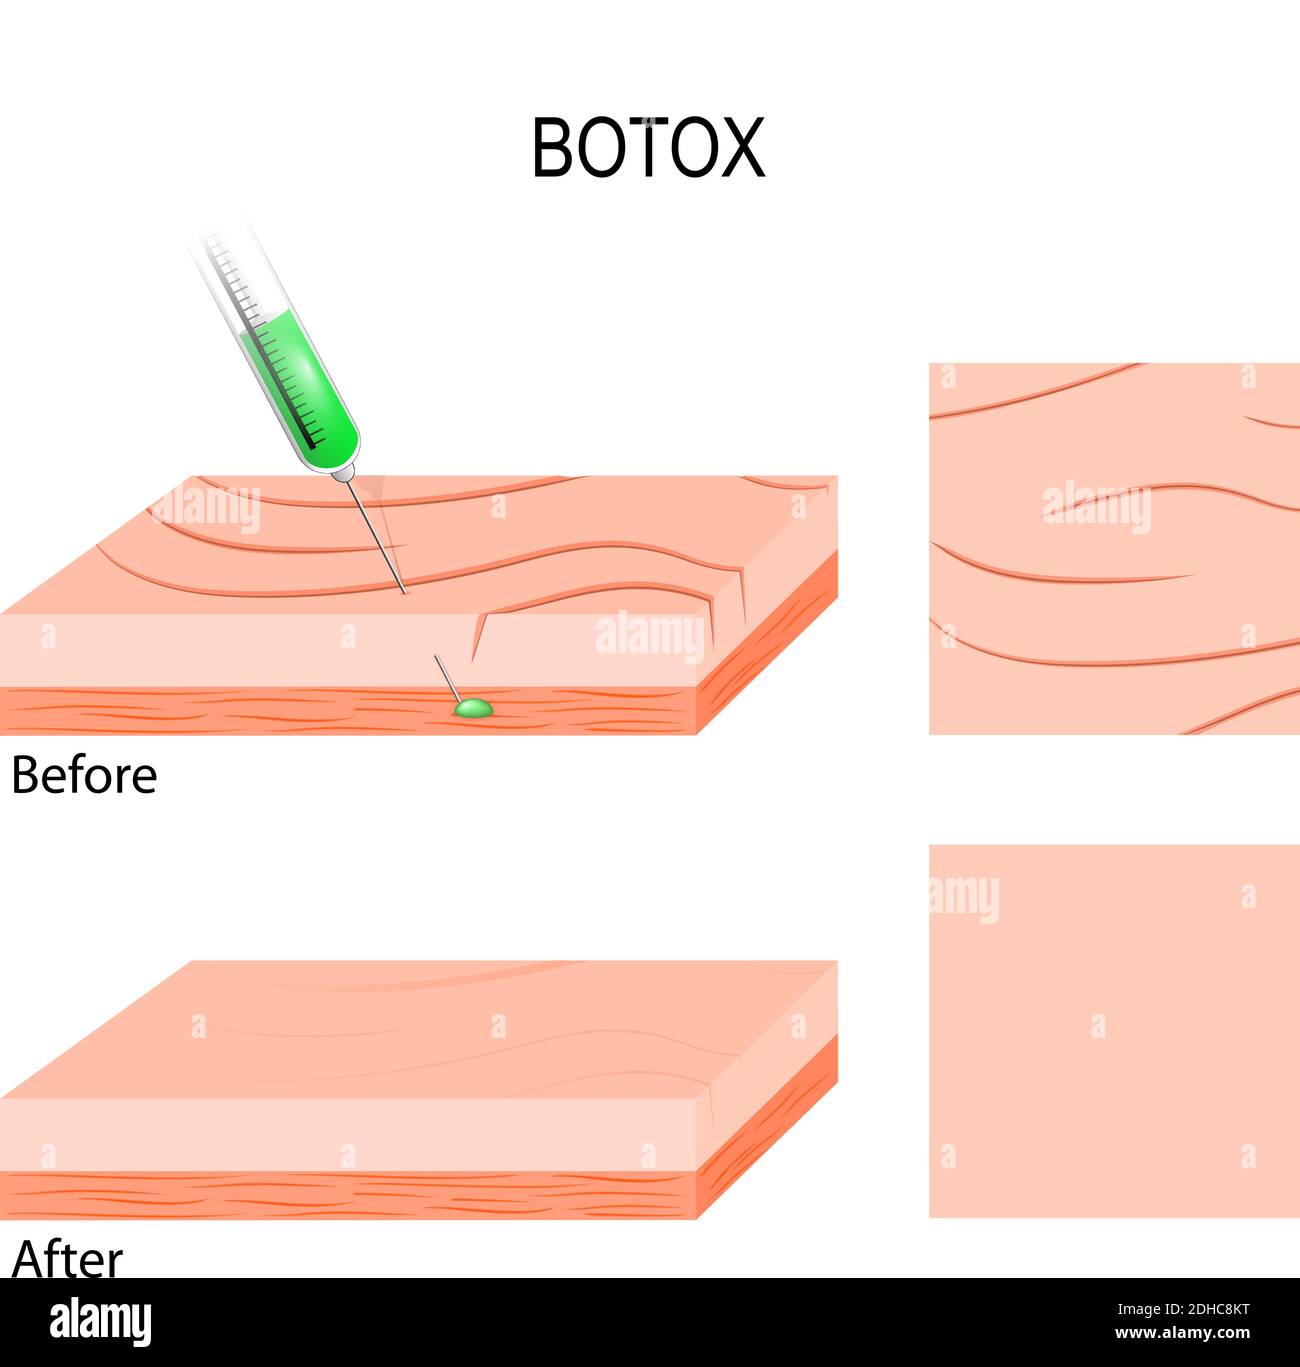 Botox. Les applications cosmétiques de remplissage pour la réduction des rides faciales. Injection de botox dans les muscles sous les rides faciales Illustration de Vecteur